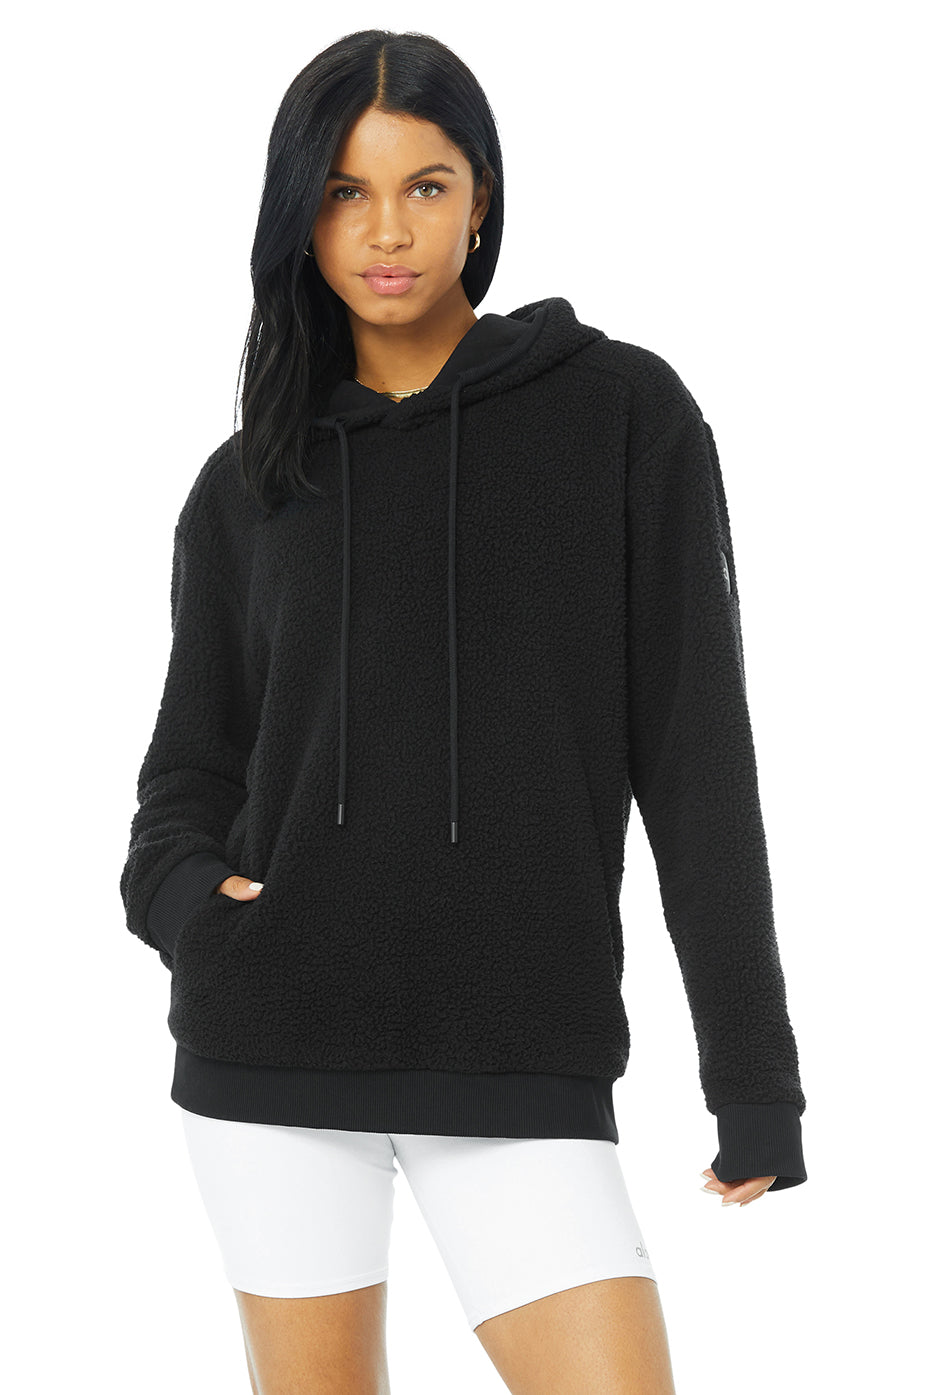 Sherpa Sweatshirt in Black by Alo Yoga | Ballet for Women